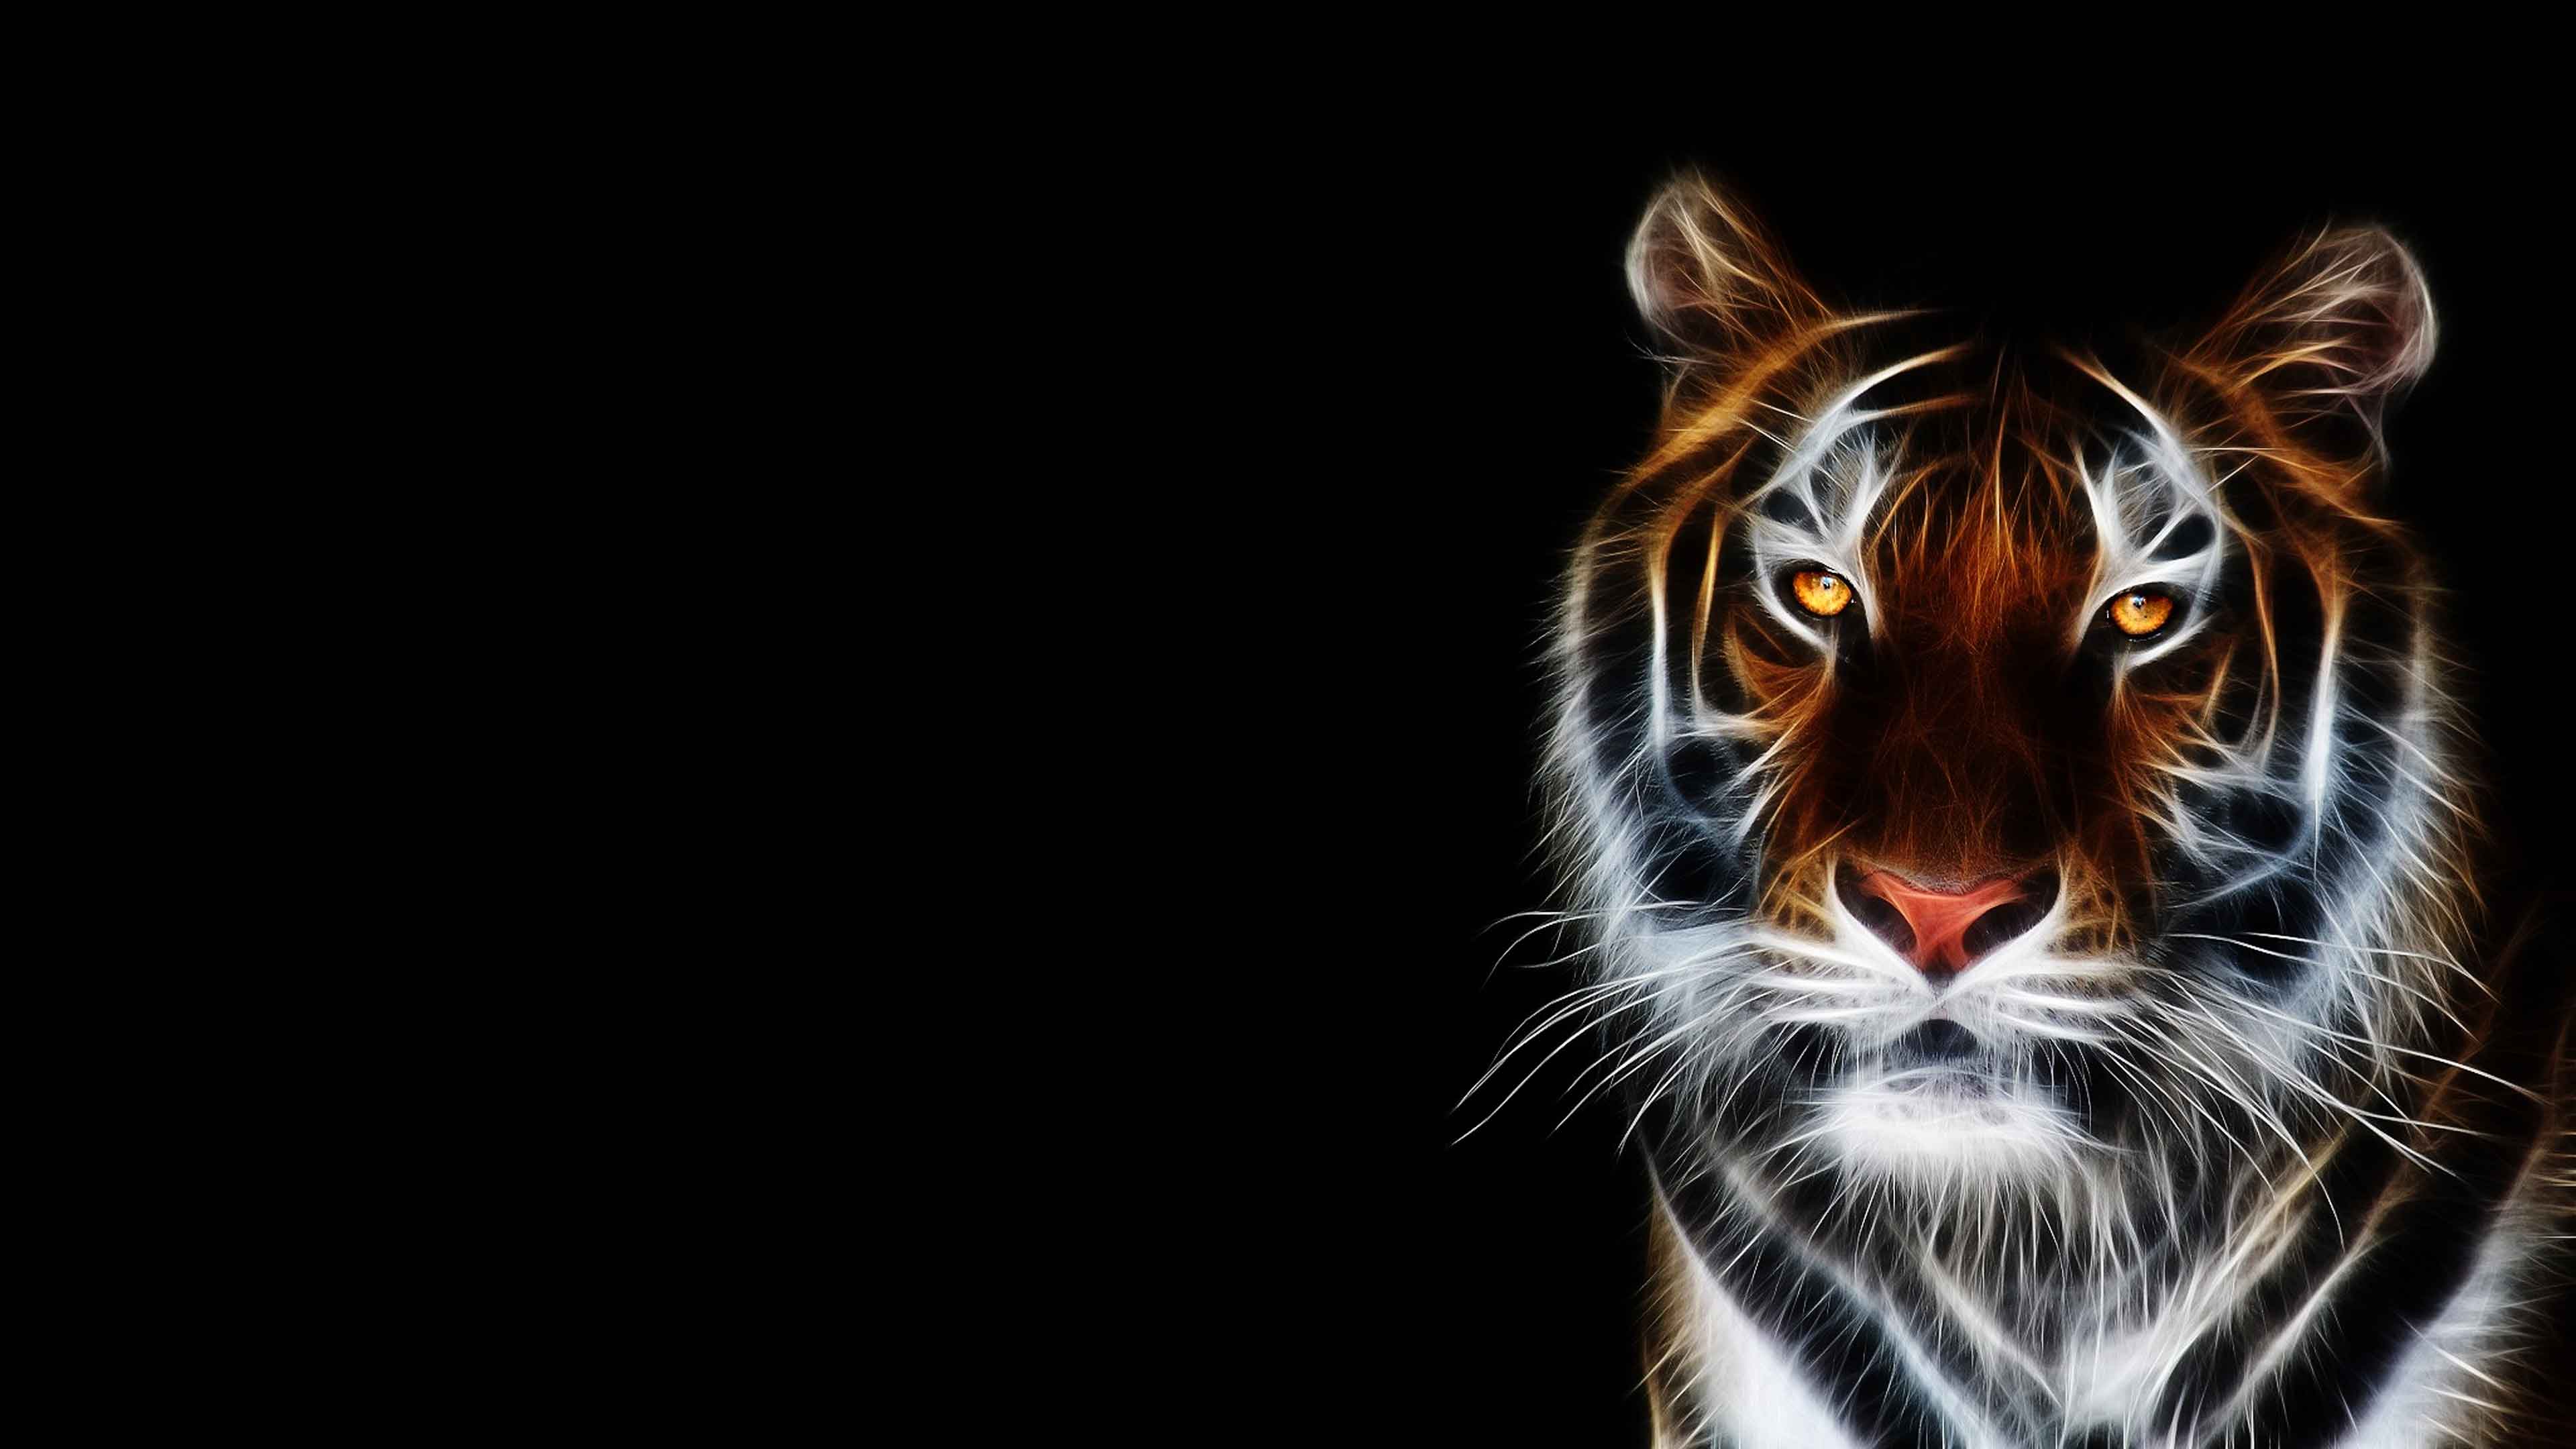 3D Tiger Wallpaper Desktop